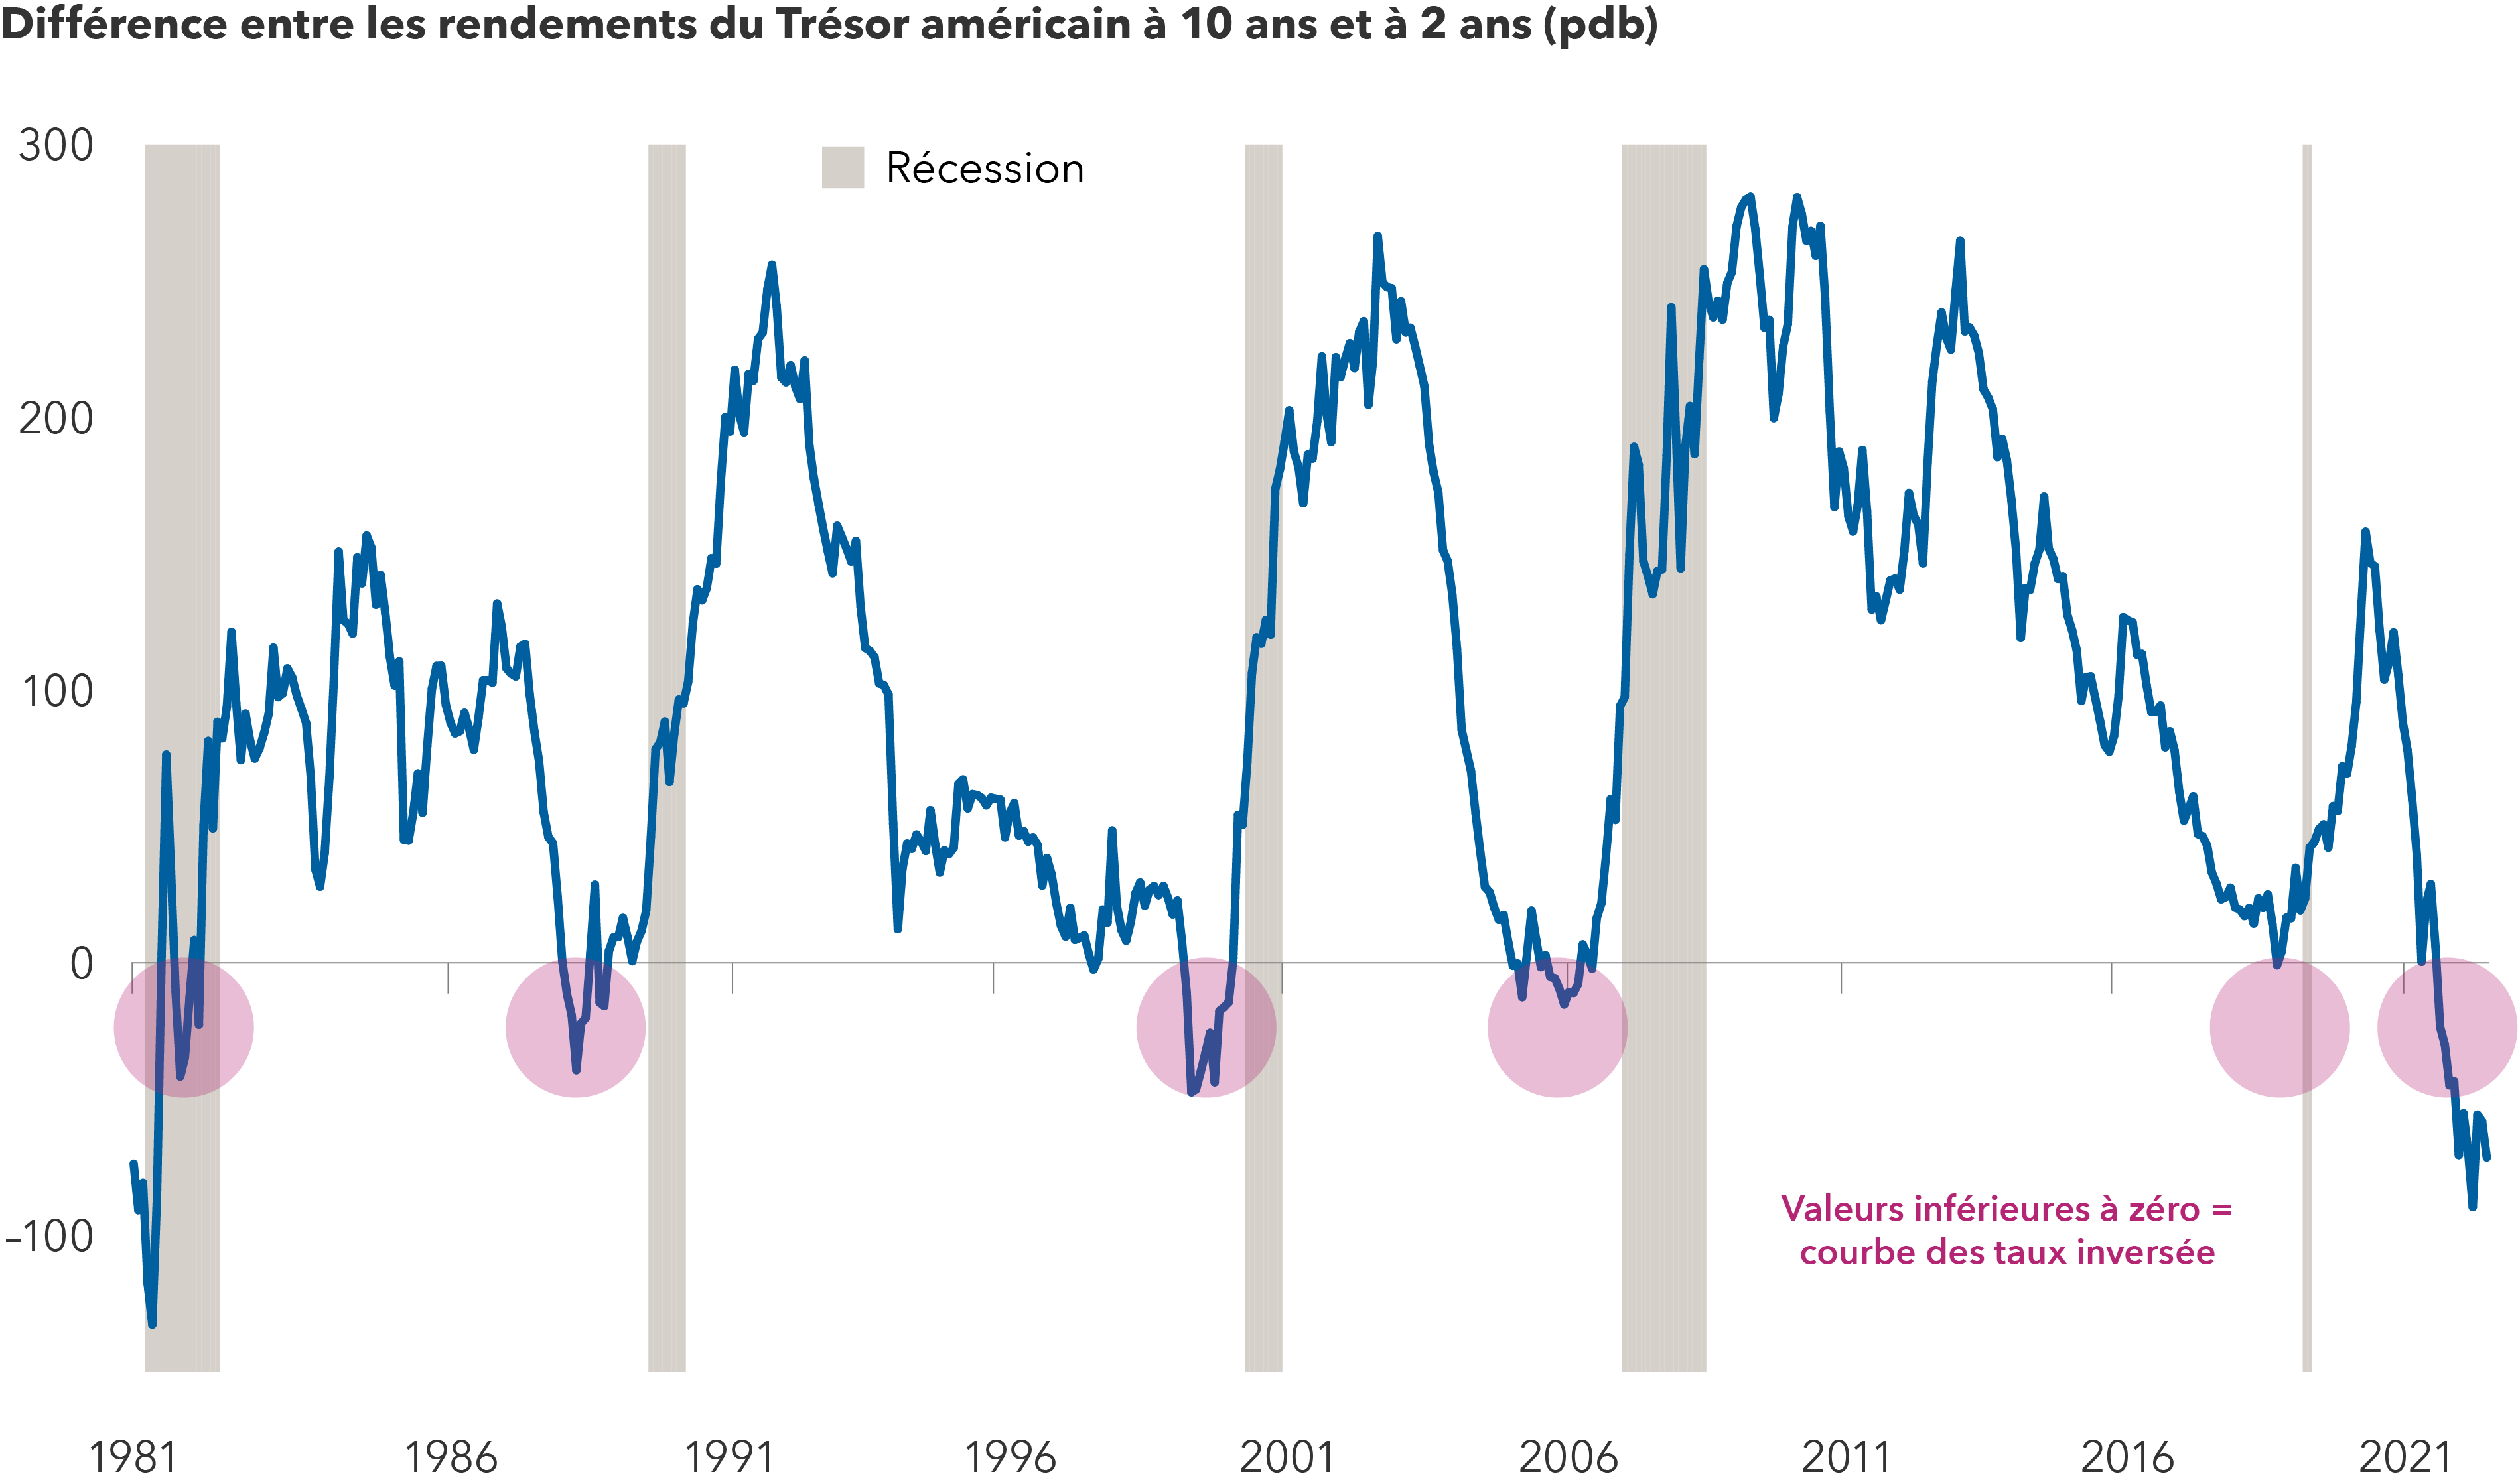 L’image présente la différence entre les rendements des obligations du Trésor américain à 10 ans et à 2 ans de 1981 à 2023. Lorsque les valeurs tombent à moins de zéro, il en résulte une courbe de rendement inversée, ce qui, historiquement, a été un indicateur fiable de récessions imminentes. L’image présente cinq périodes précédentes au cours desquelles la courbe de rendement s’est inversée, à savoir en 1981, 1989, 2000, 2006 et 2020. Les cinq périodes ont précédé des récessions. L’inversion actuelle est la plus forte depuis le début des années 1980.